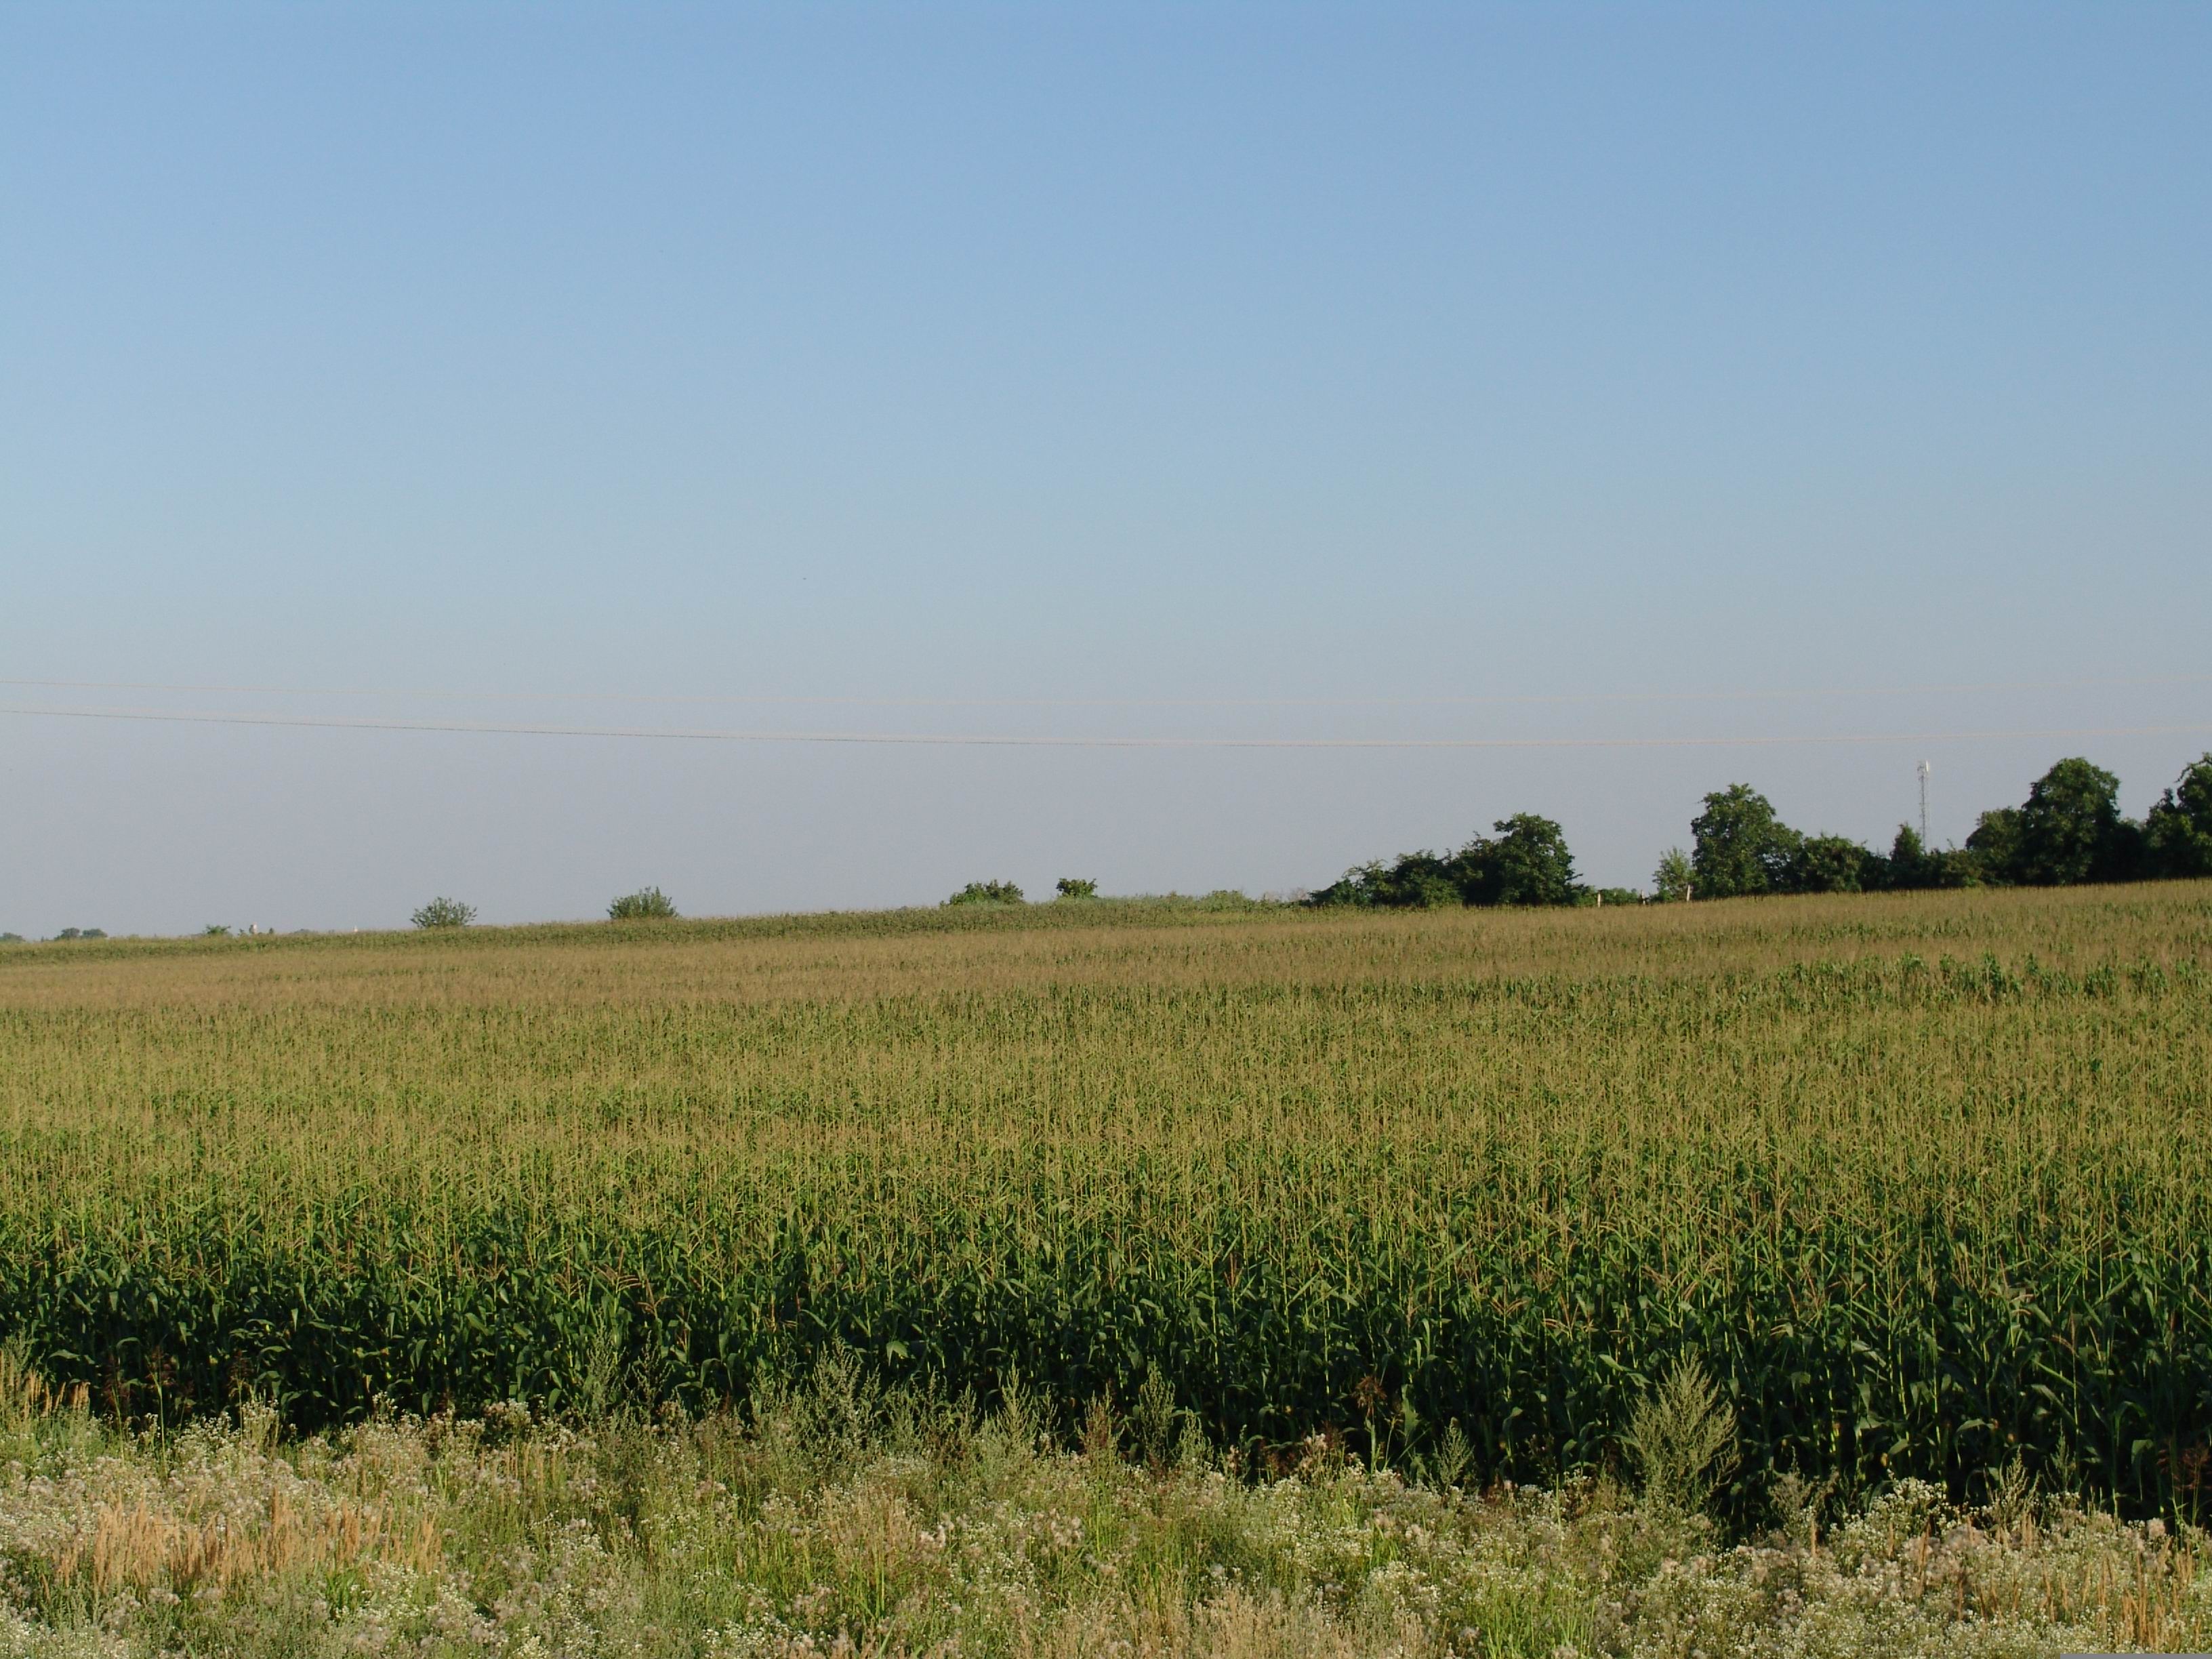 File:Corn field.jpg - Wikimedia Commons